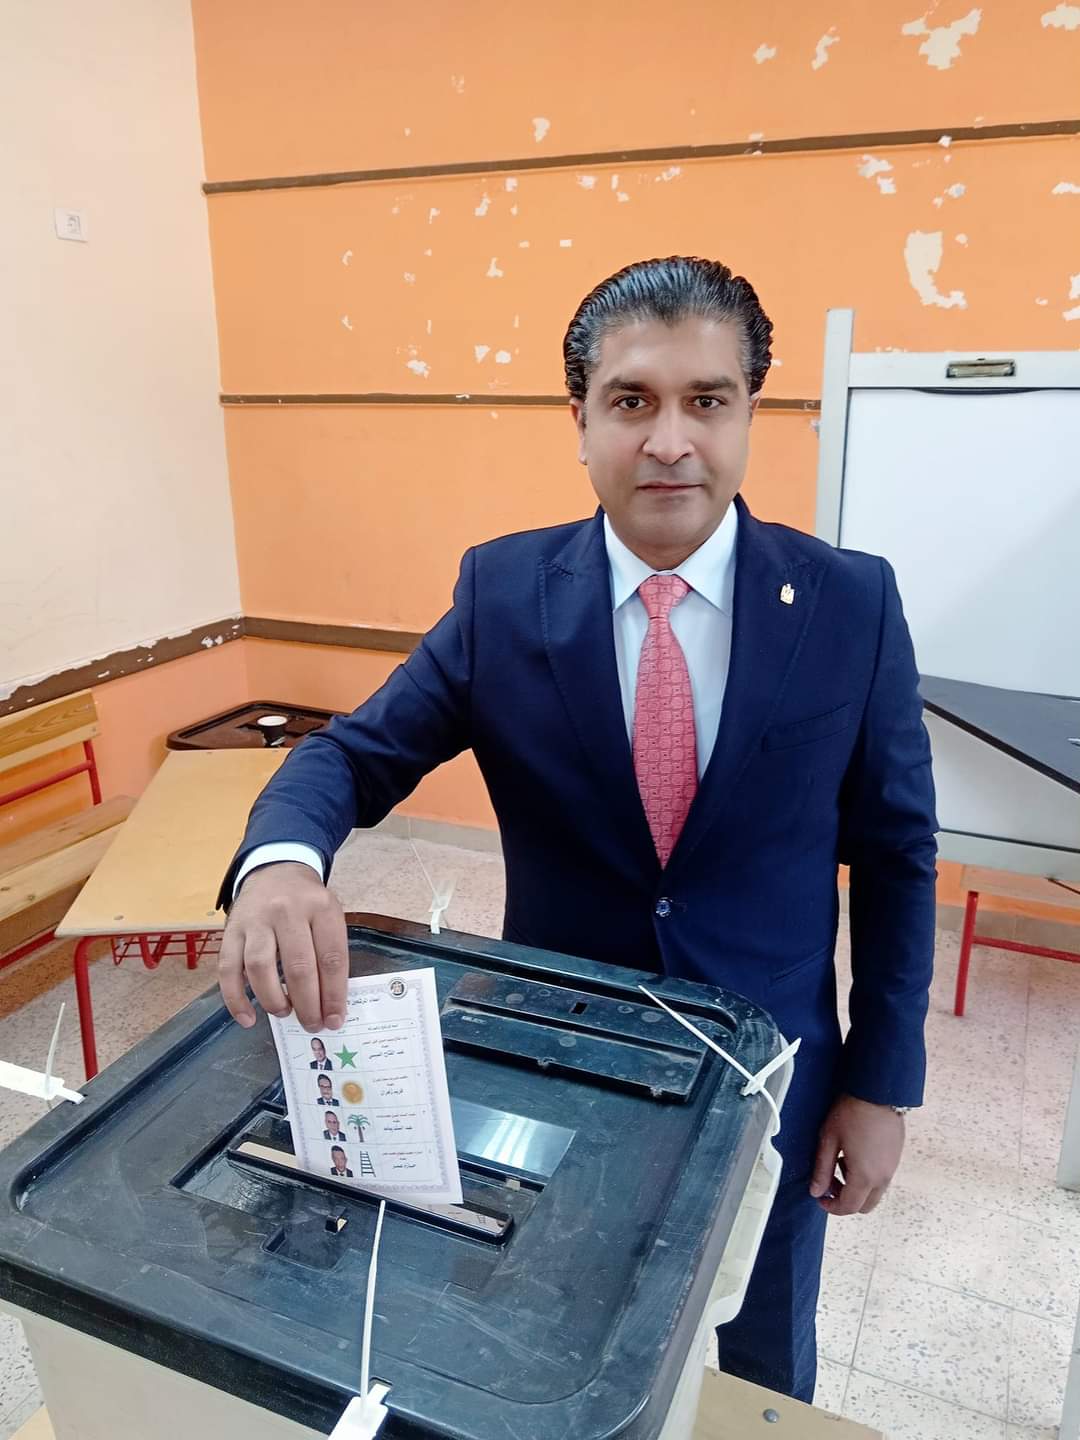 أحمد سمير رئيس الإتحاد المصري للميني فوتبول يدلي بصوته في الإنتخابات الرئاسية.